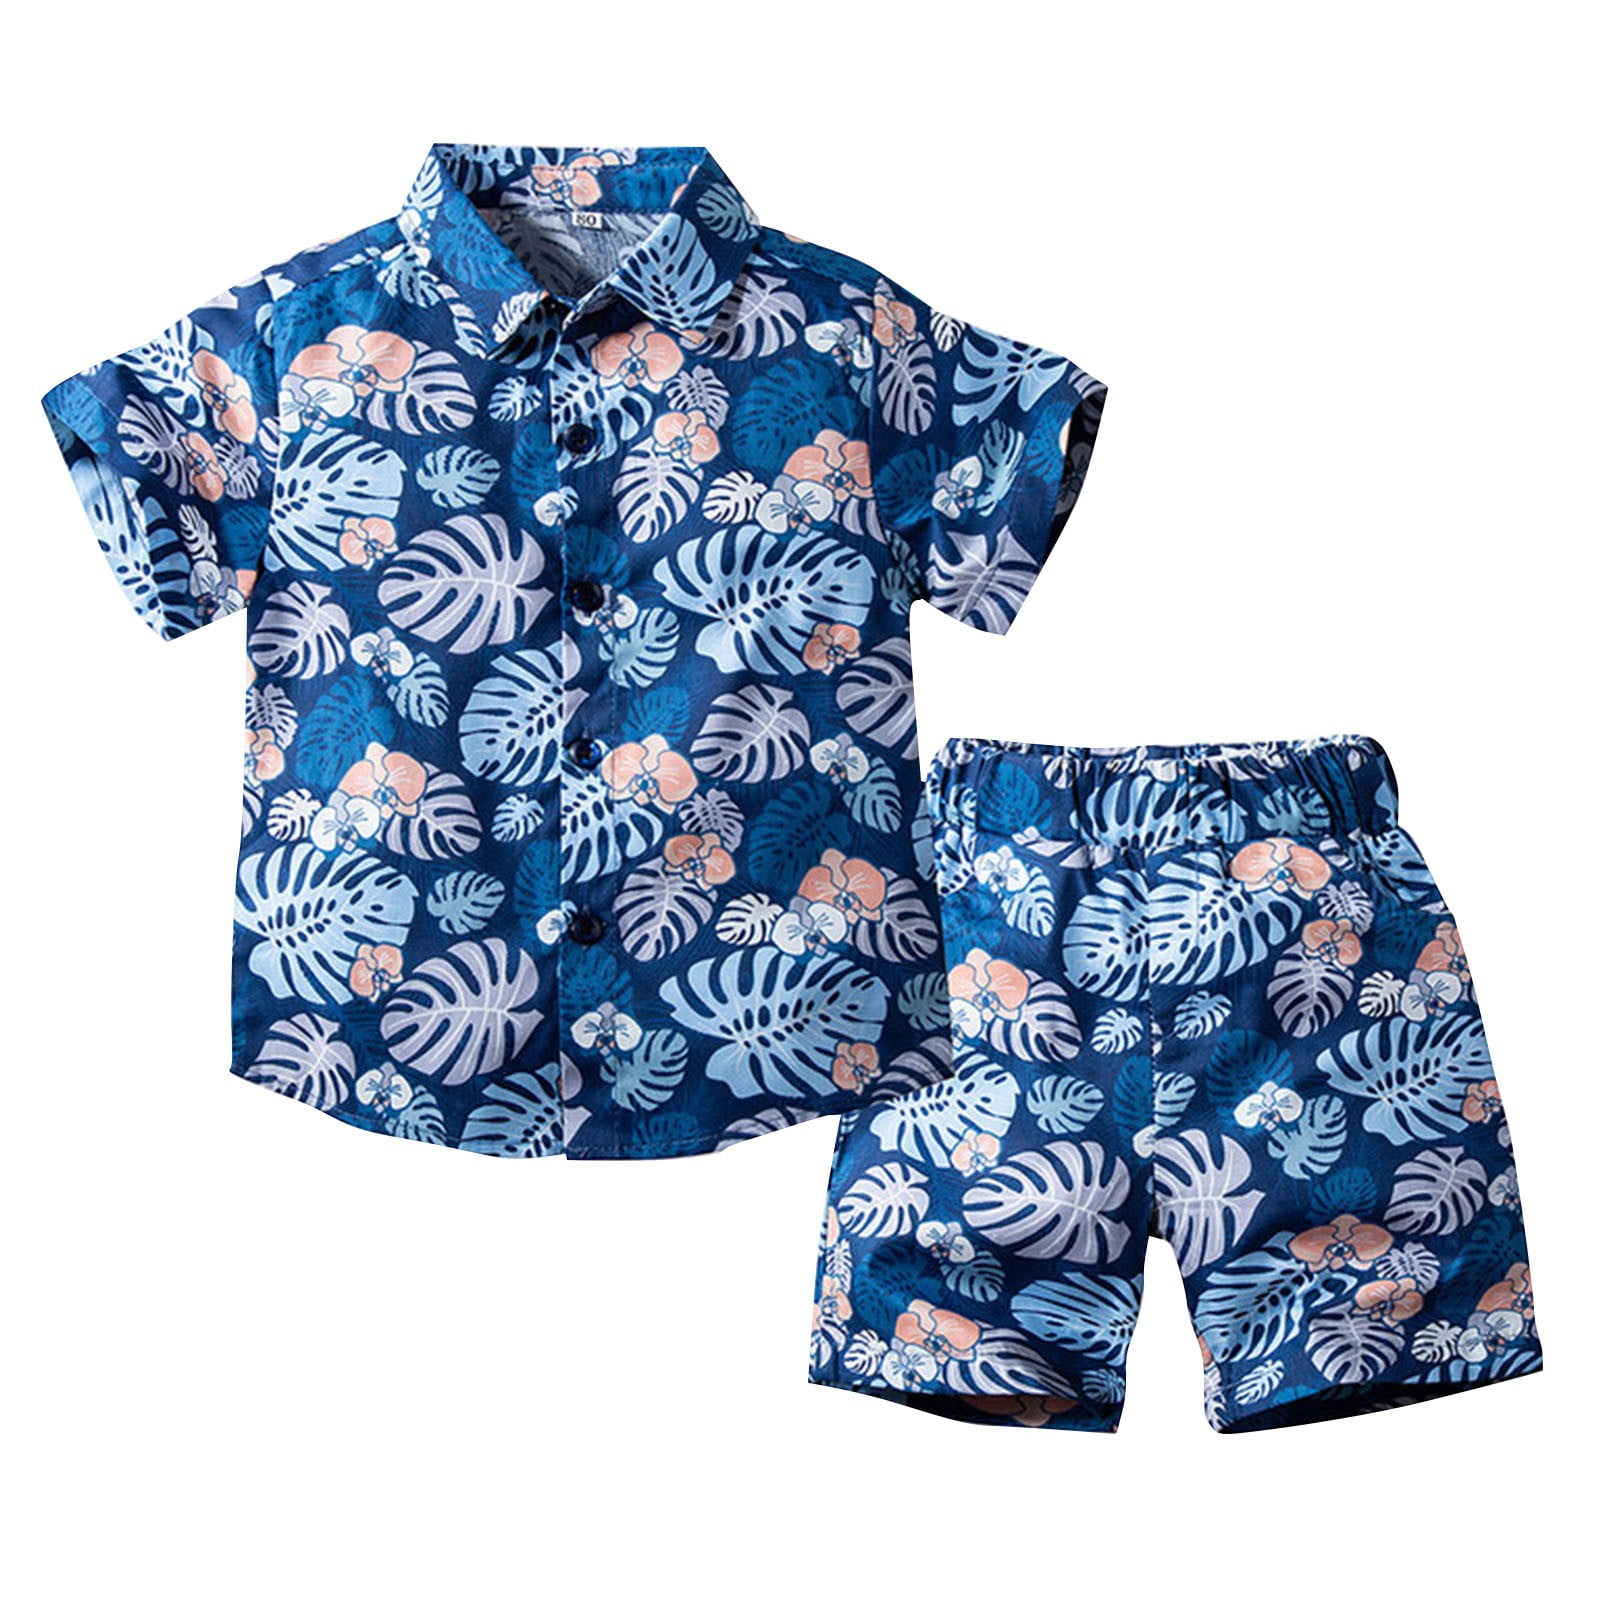 Boy Clothes Outfit Set Boys Tropical Print Shirt Beach Pants Children'S ...